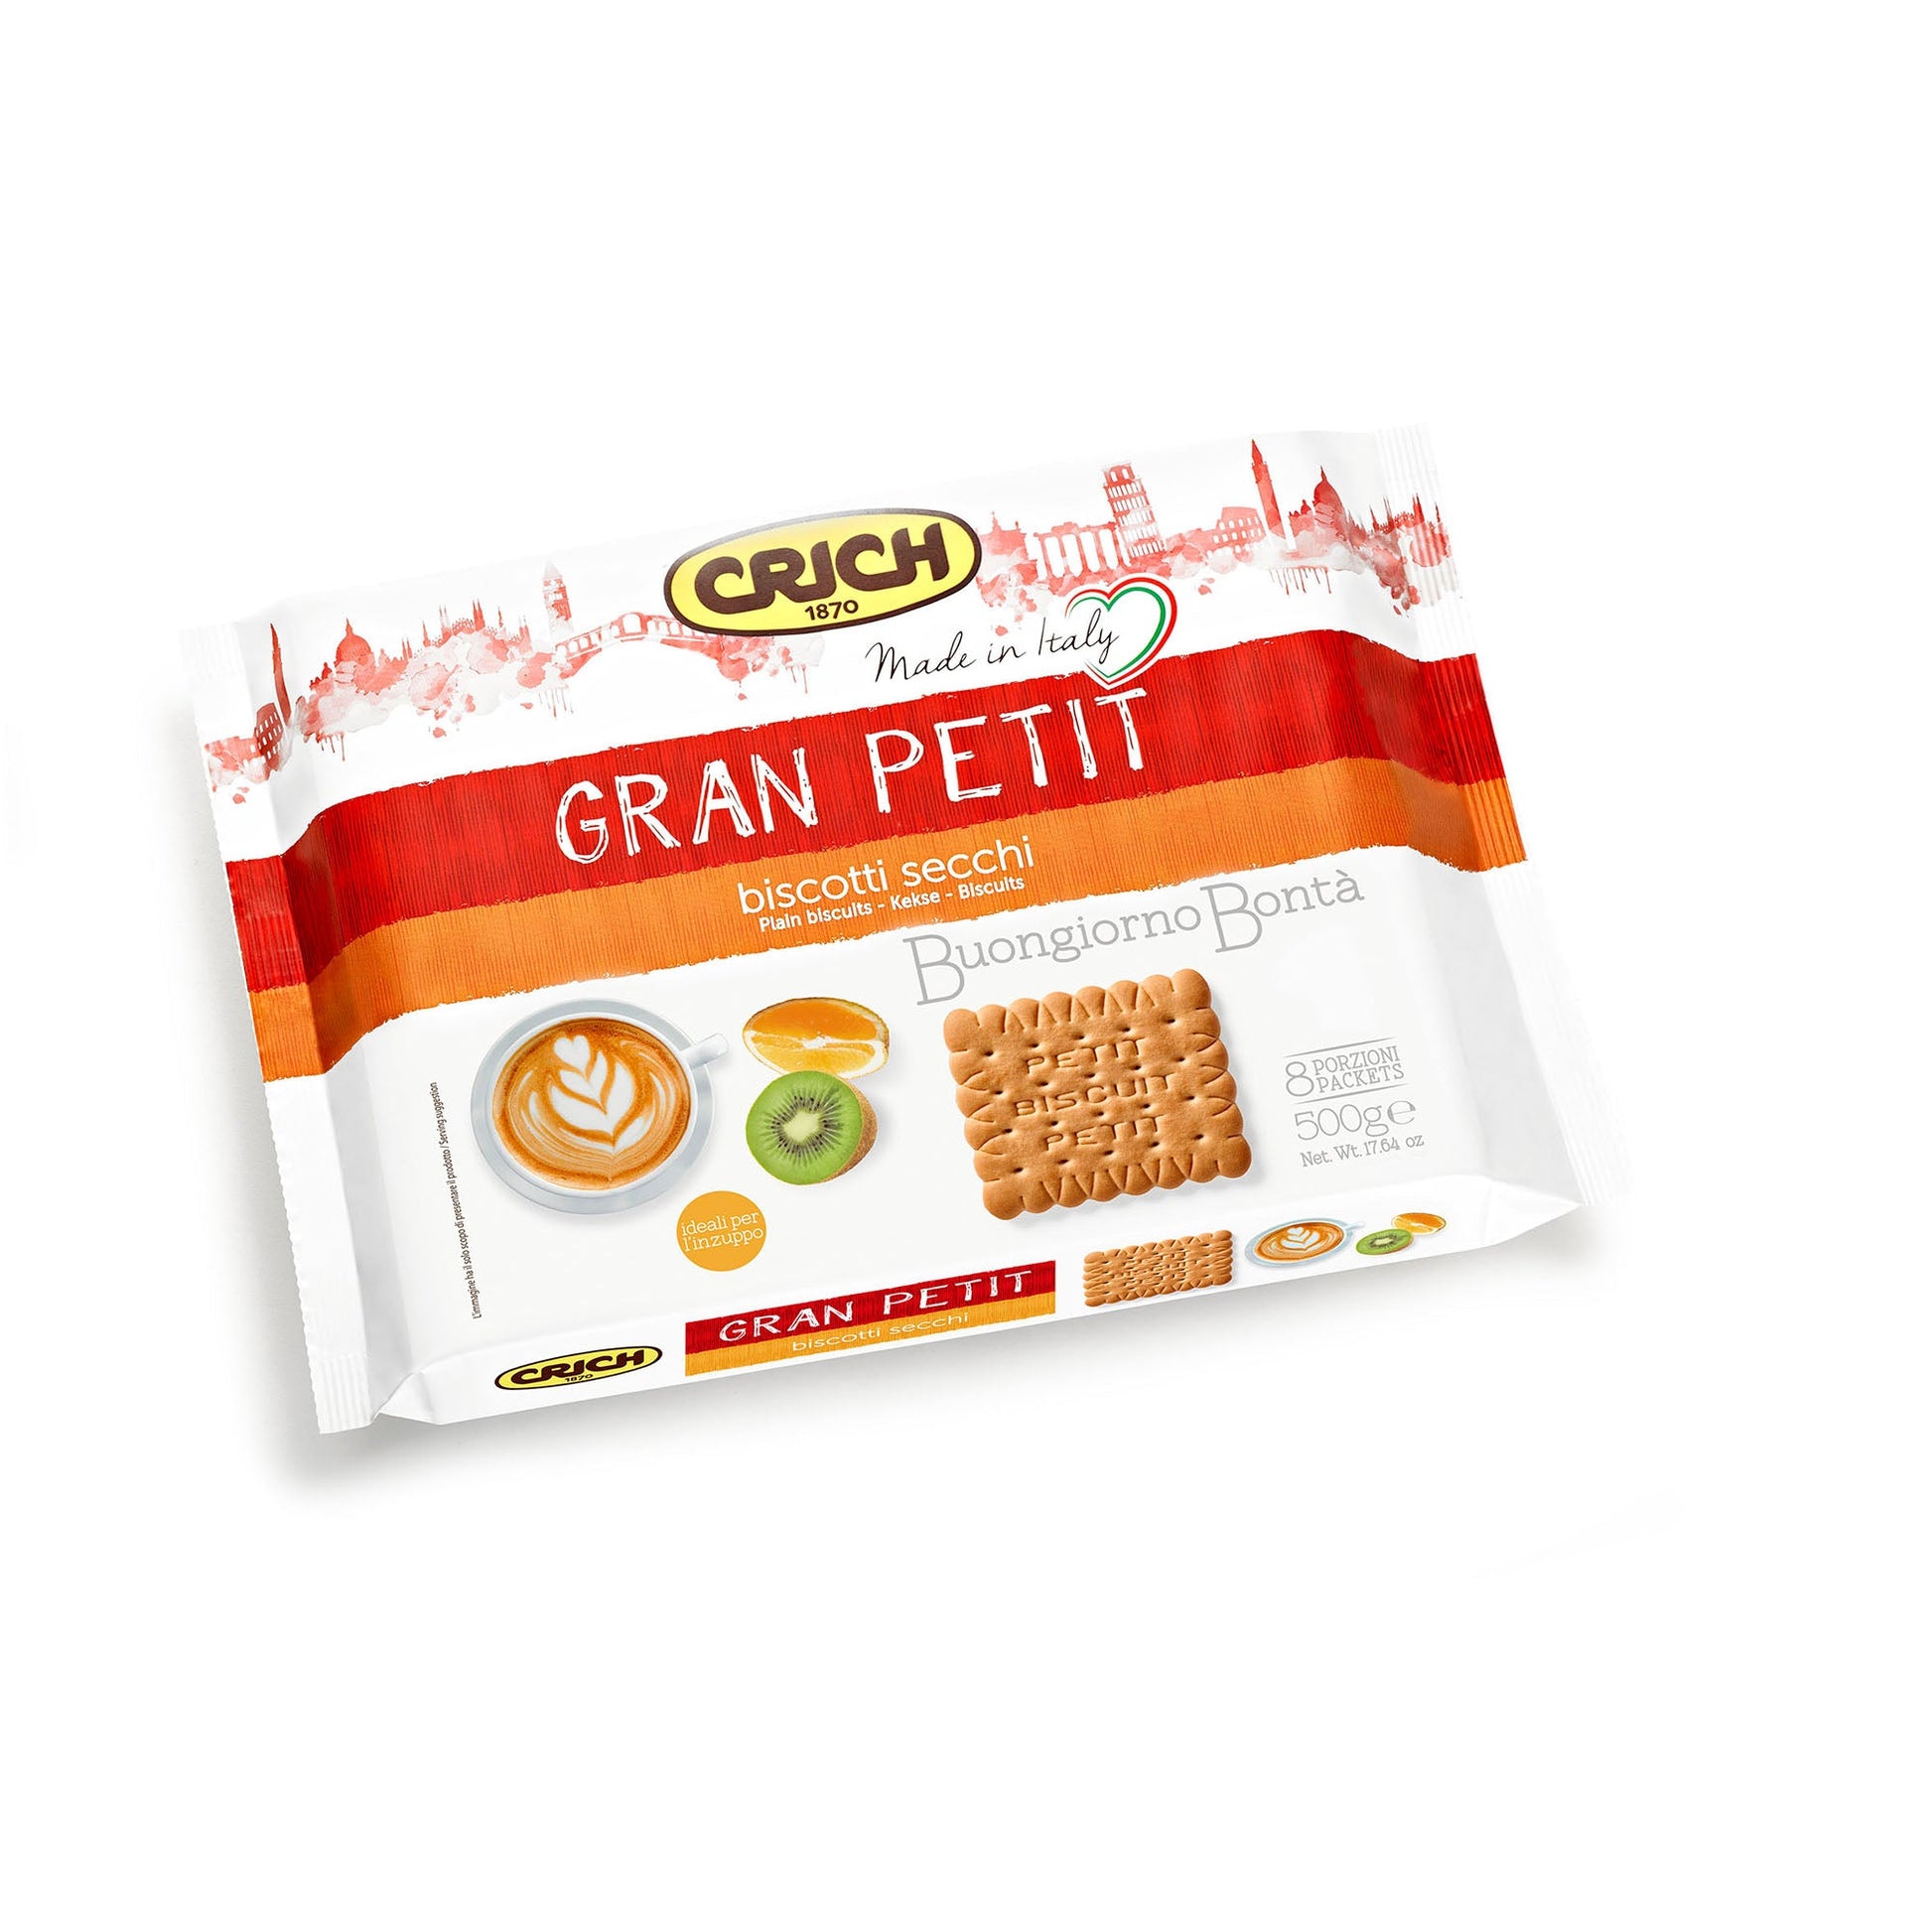 Crich Gran Petit Biscuits 500G